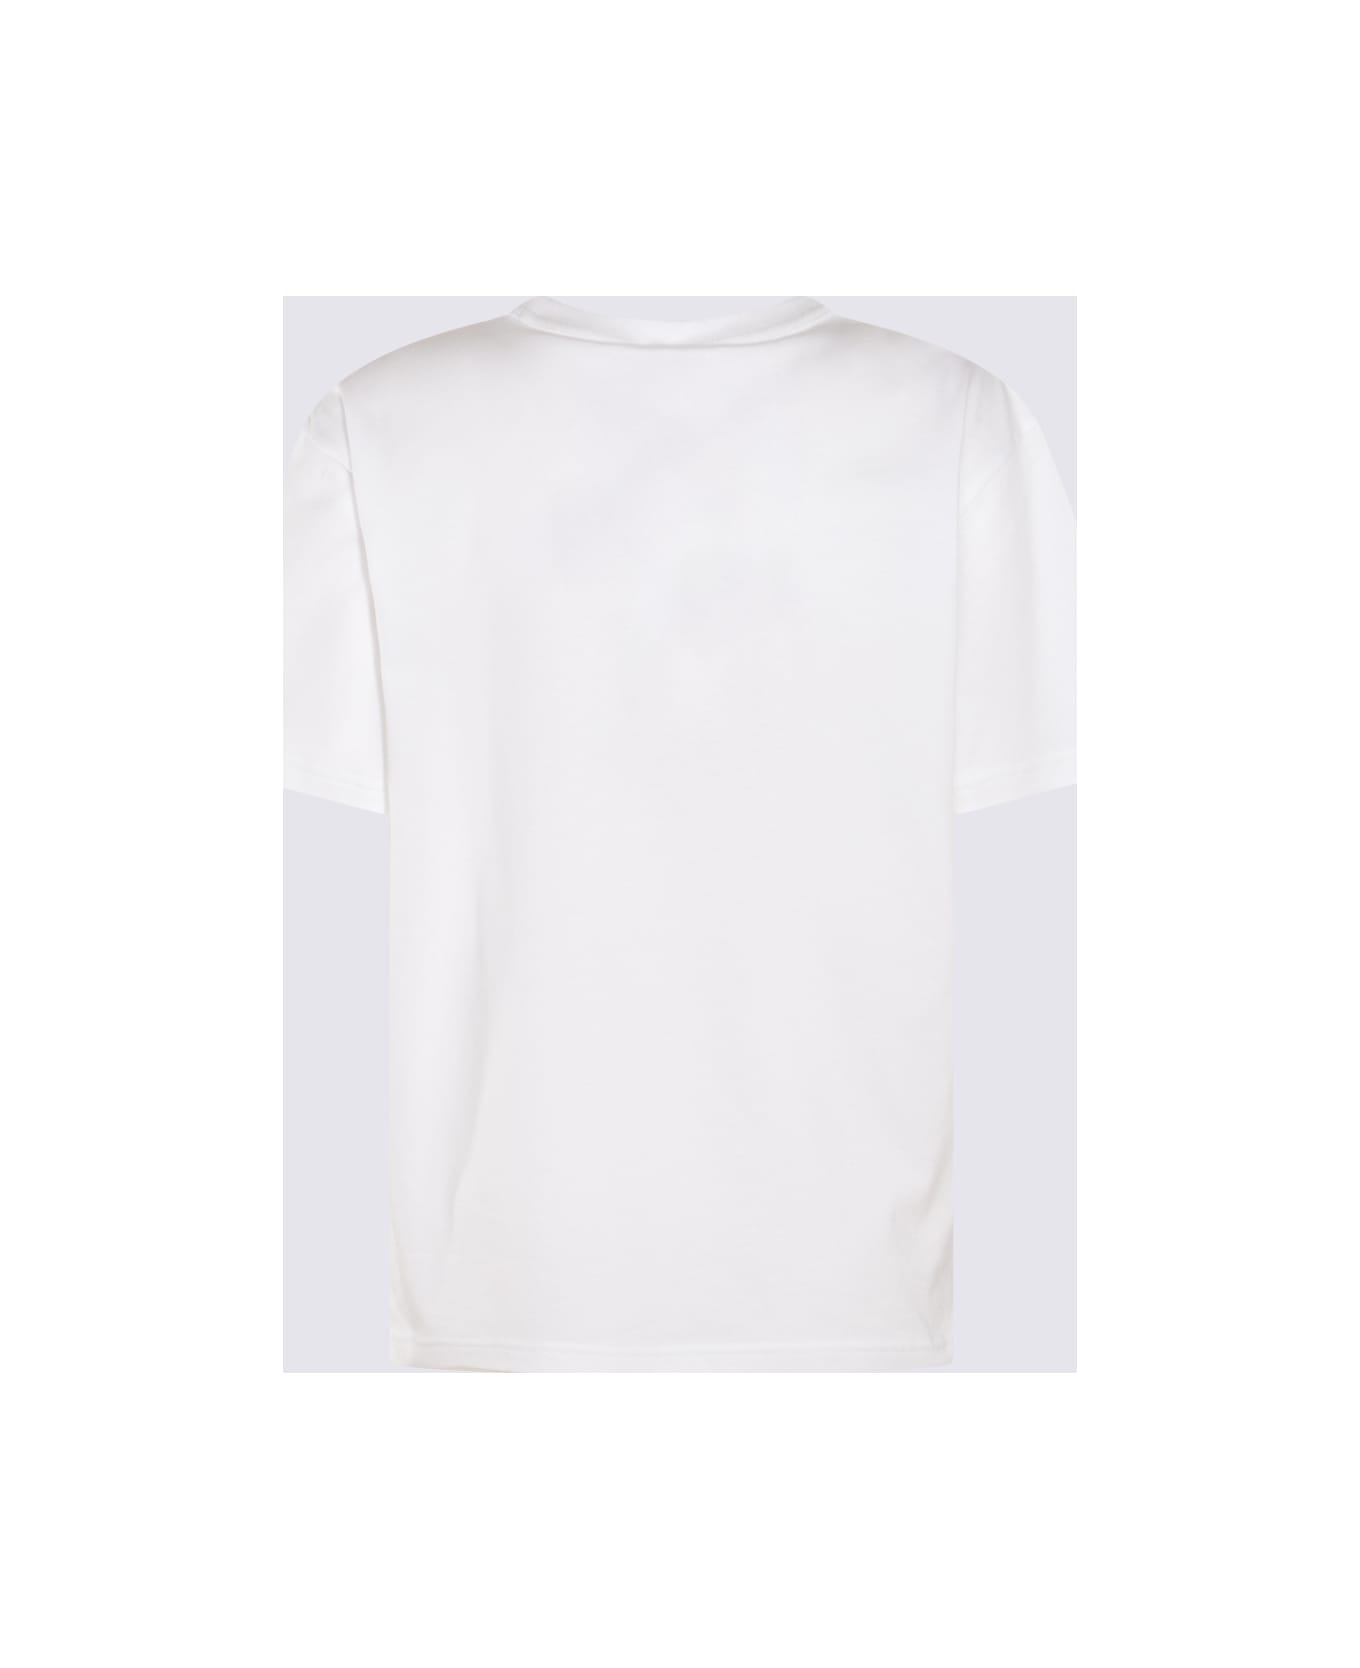 Alexander Wang White Cotton T-shirt - White